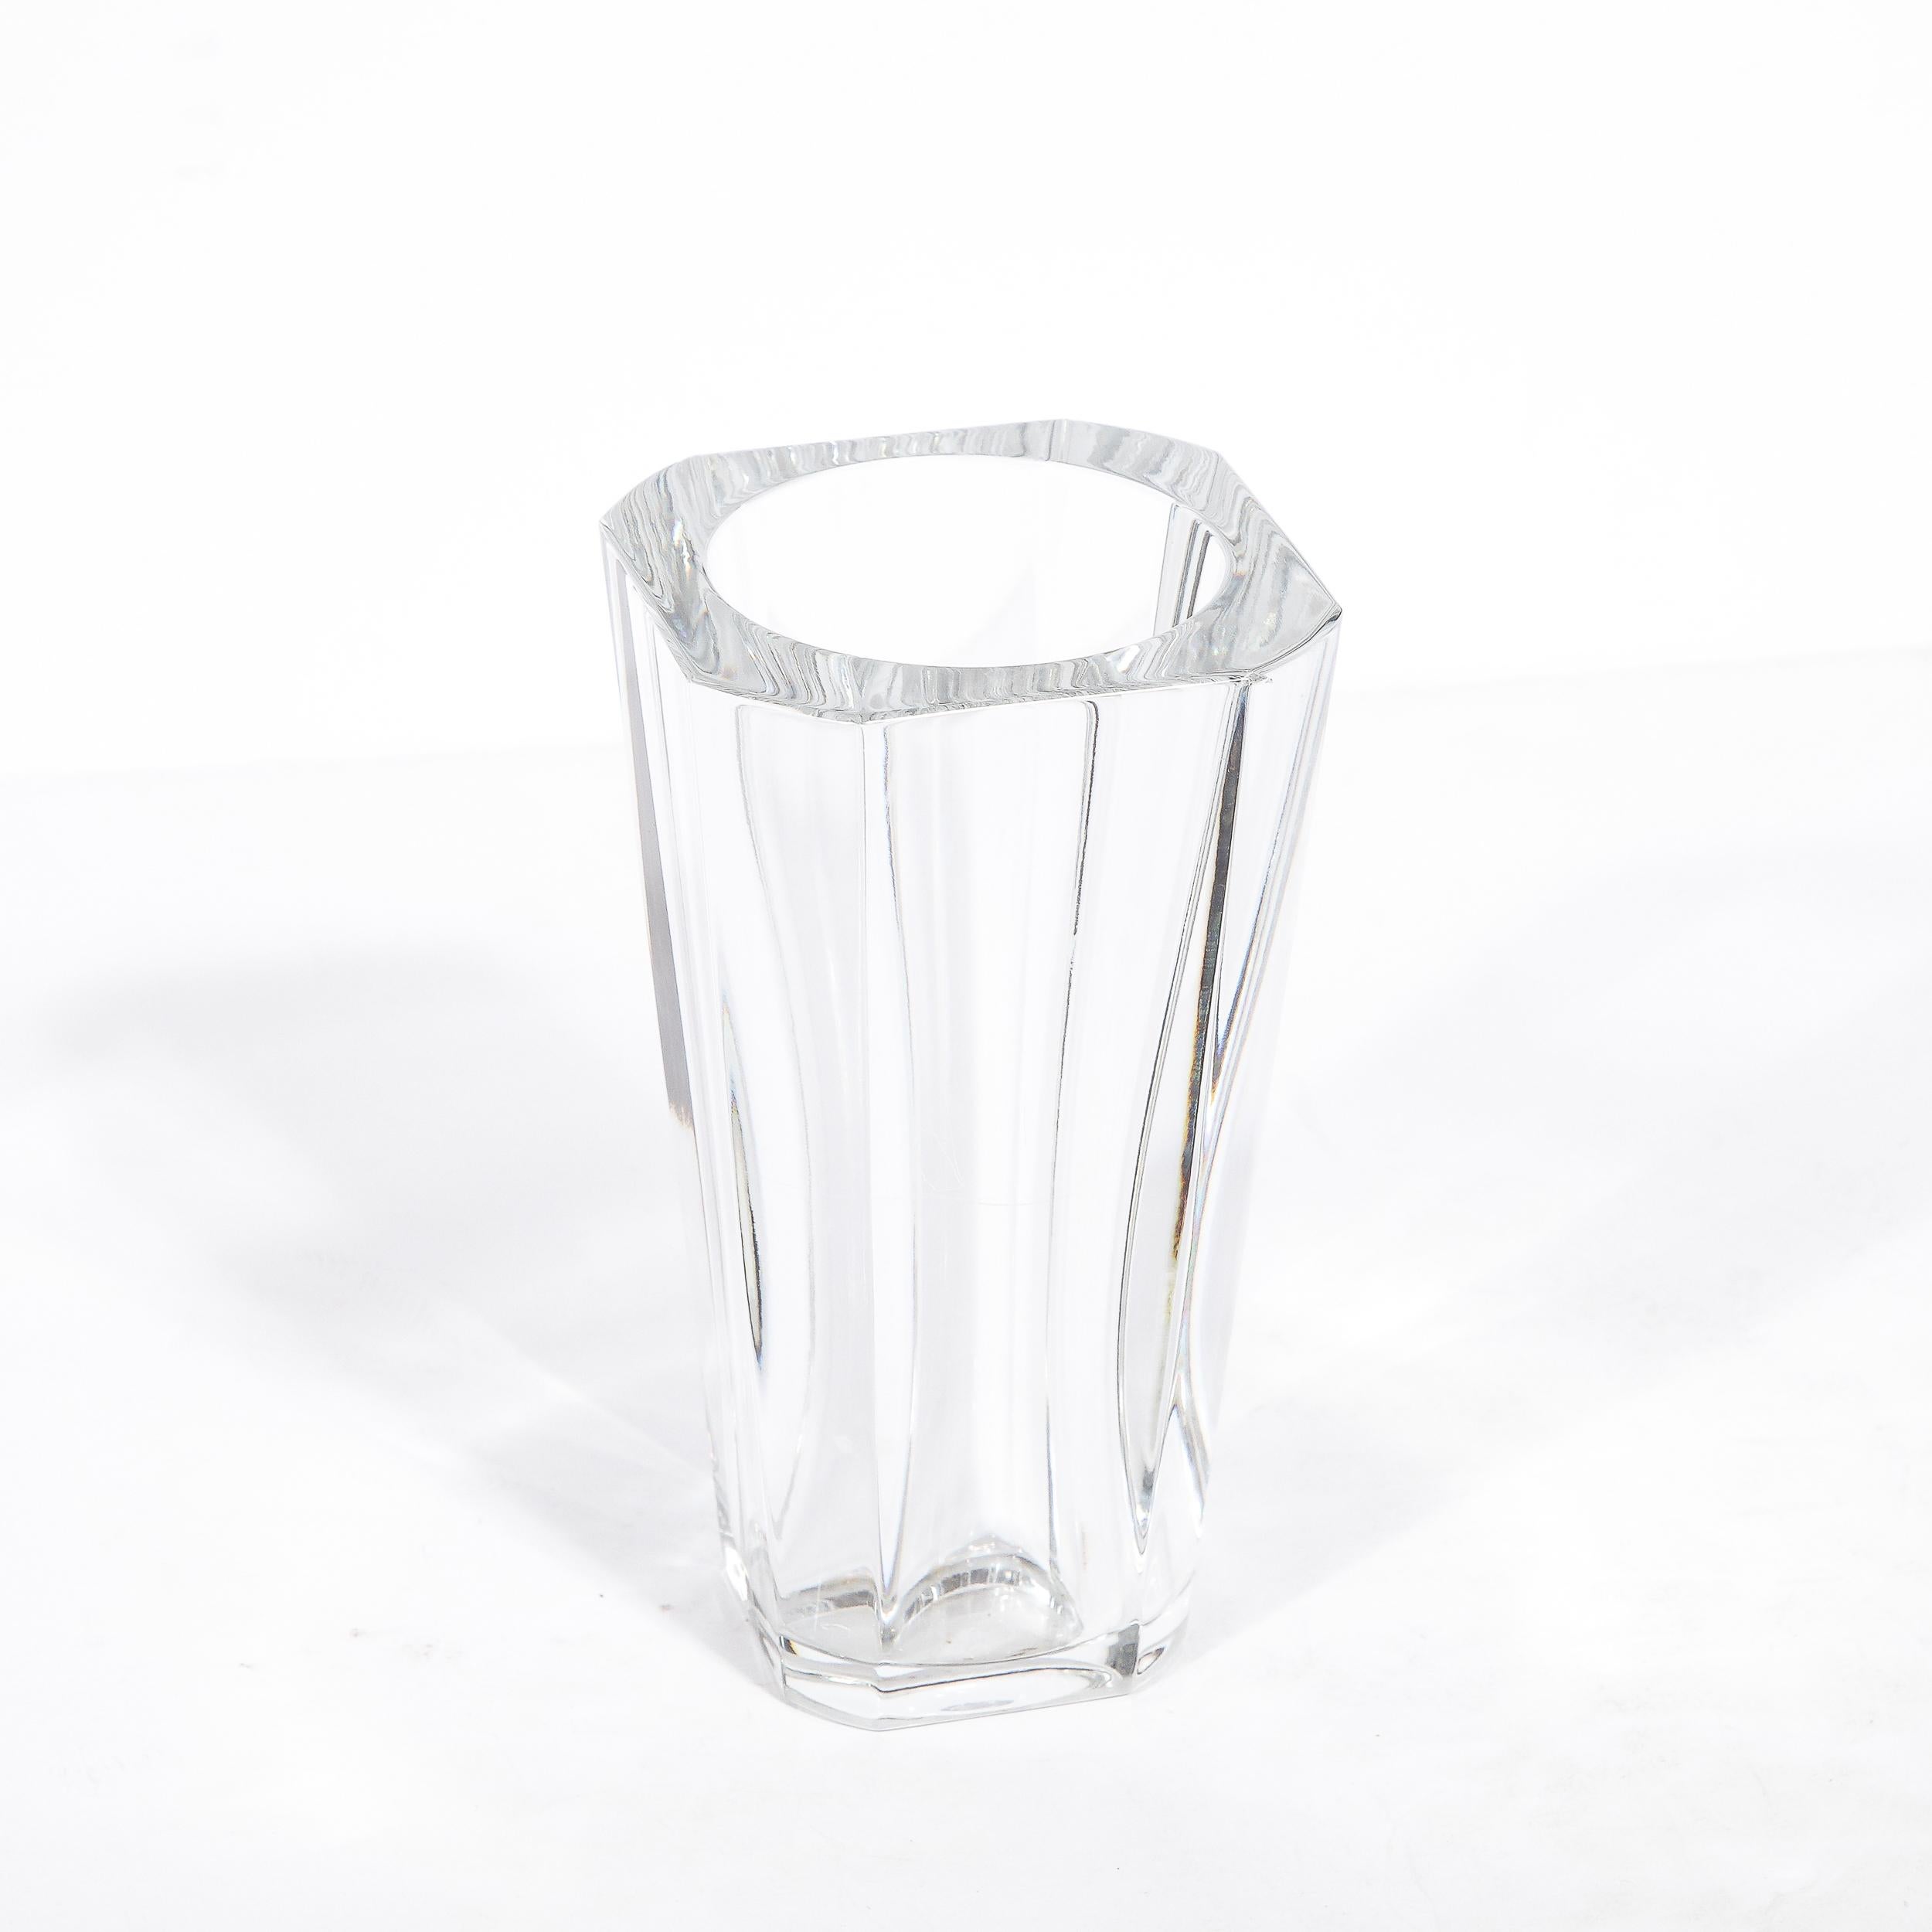 French Modernist Translucent Sculptural Crystal Vase Signed Baccarat  For Sale 1